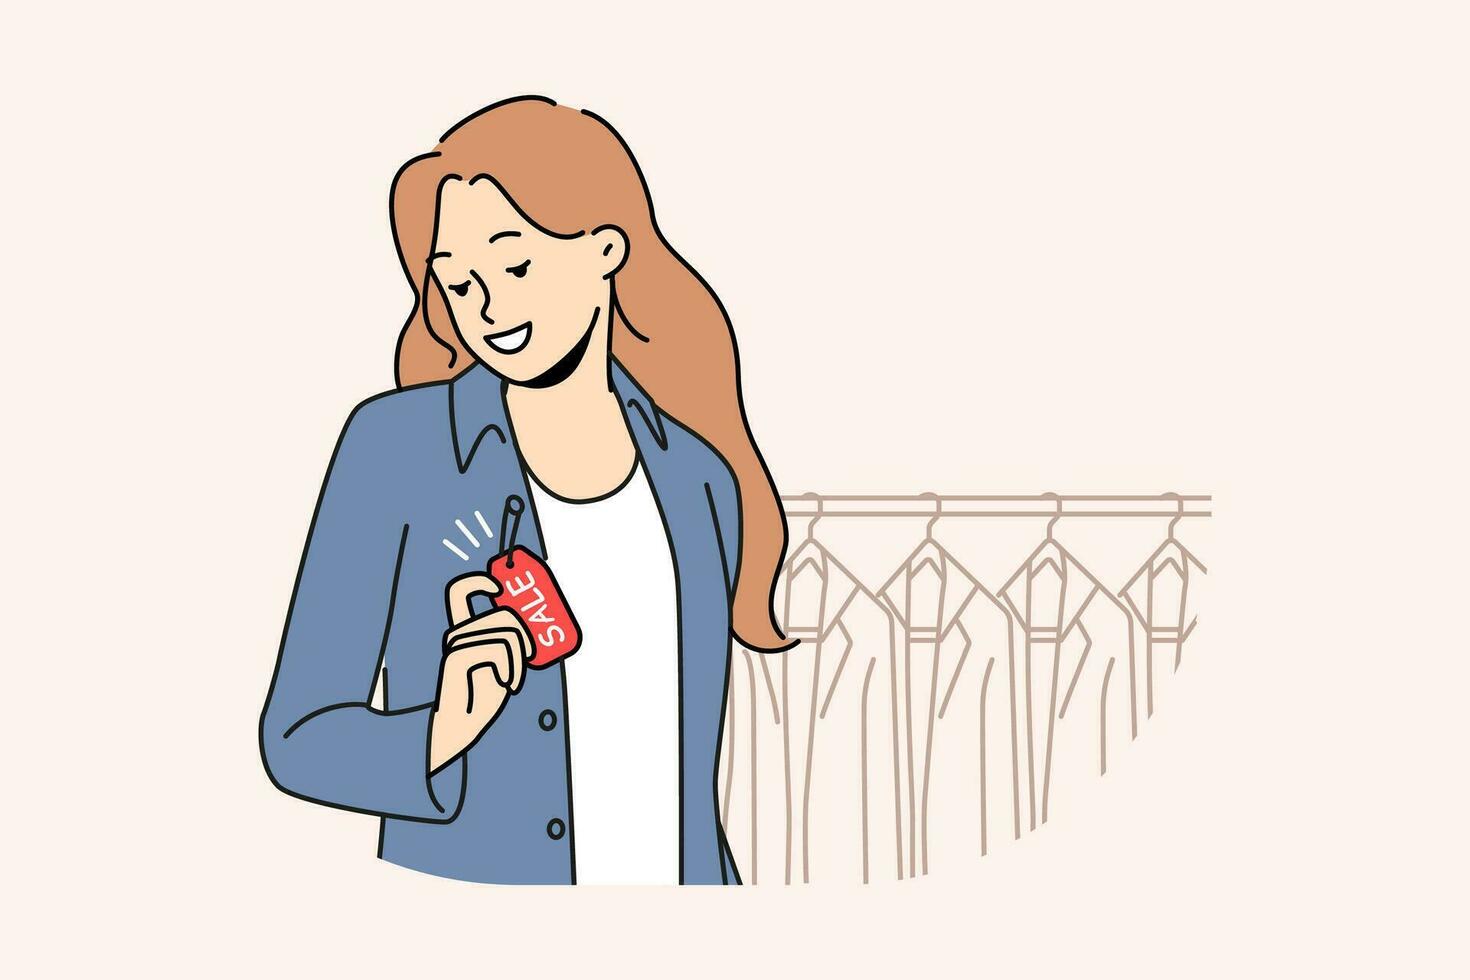 sonriente mujer vistiendo chaqueta con rebaja etiqueta en boutique. contento niña comprando ropa en descuento o promoción en almacenar. compras y estilo. vector ilustración.